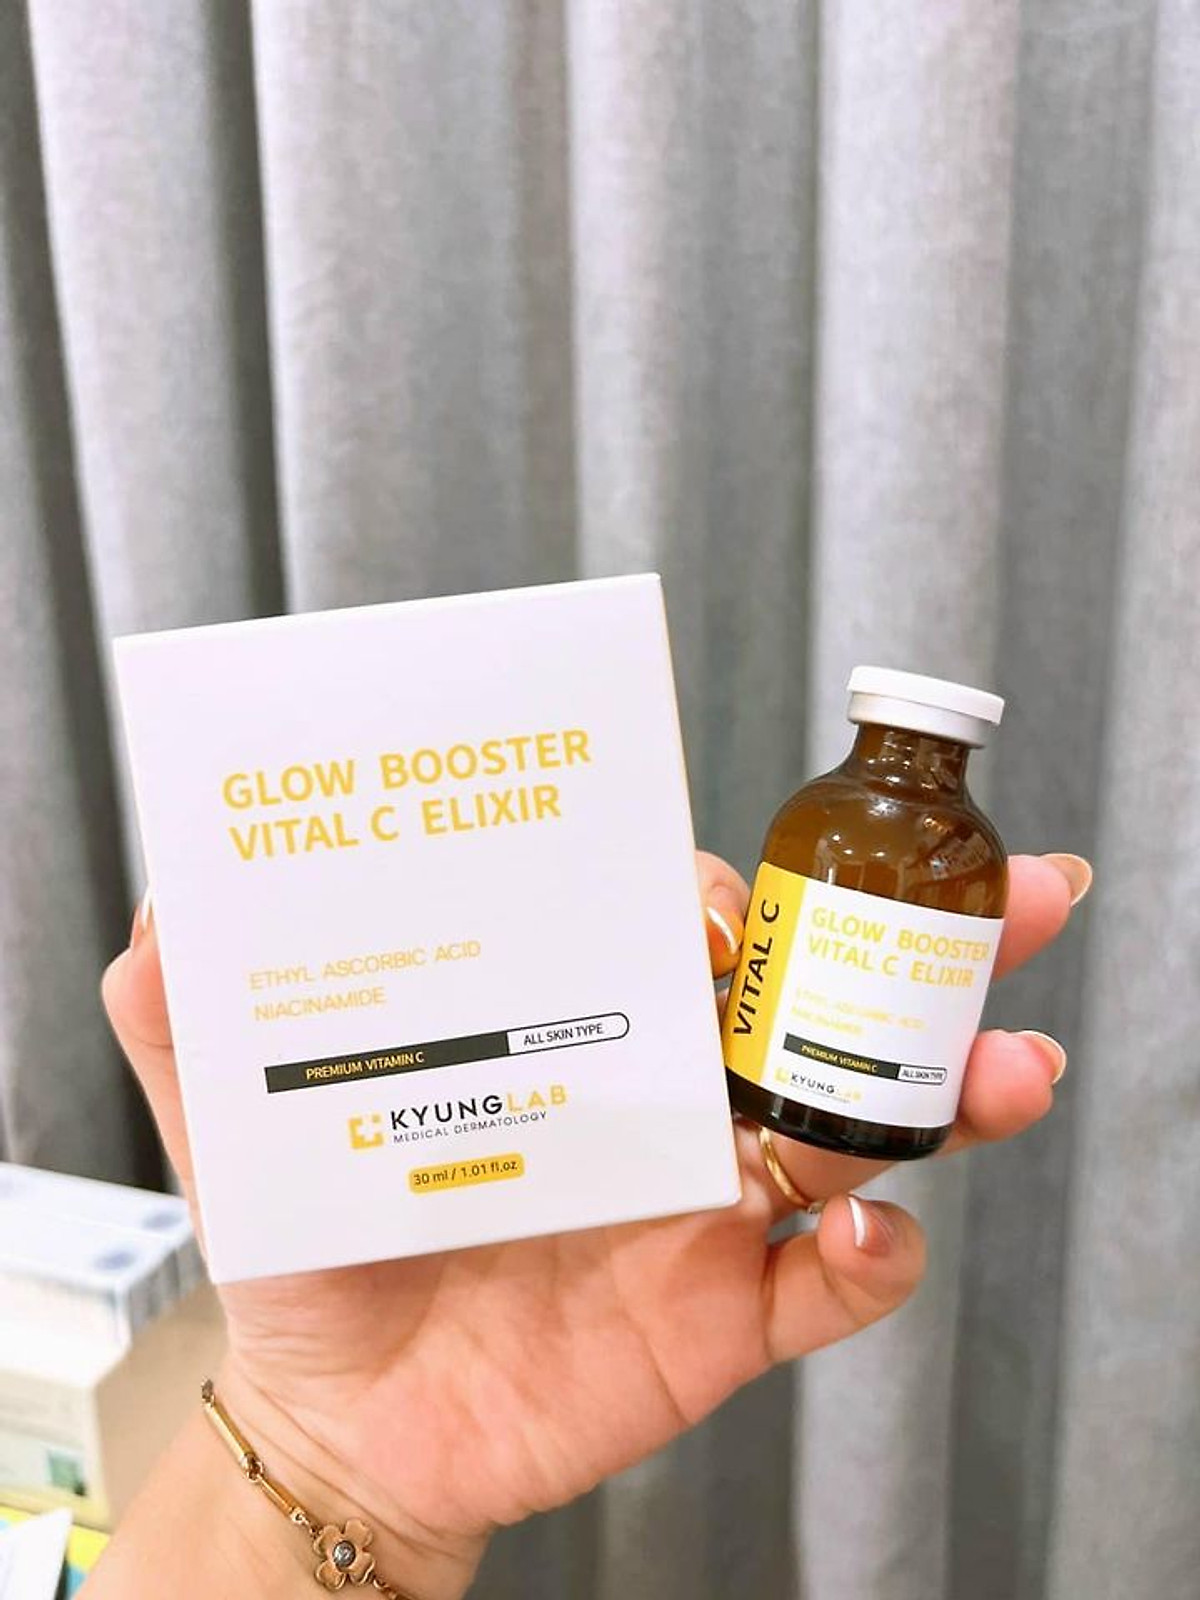 Huyết Thanh Glow Booster Vital C Elixir KyungLab giúp tái sinh tế bào da